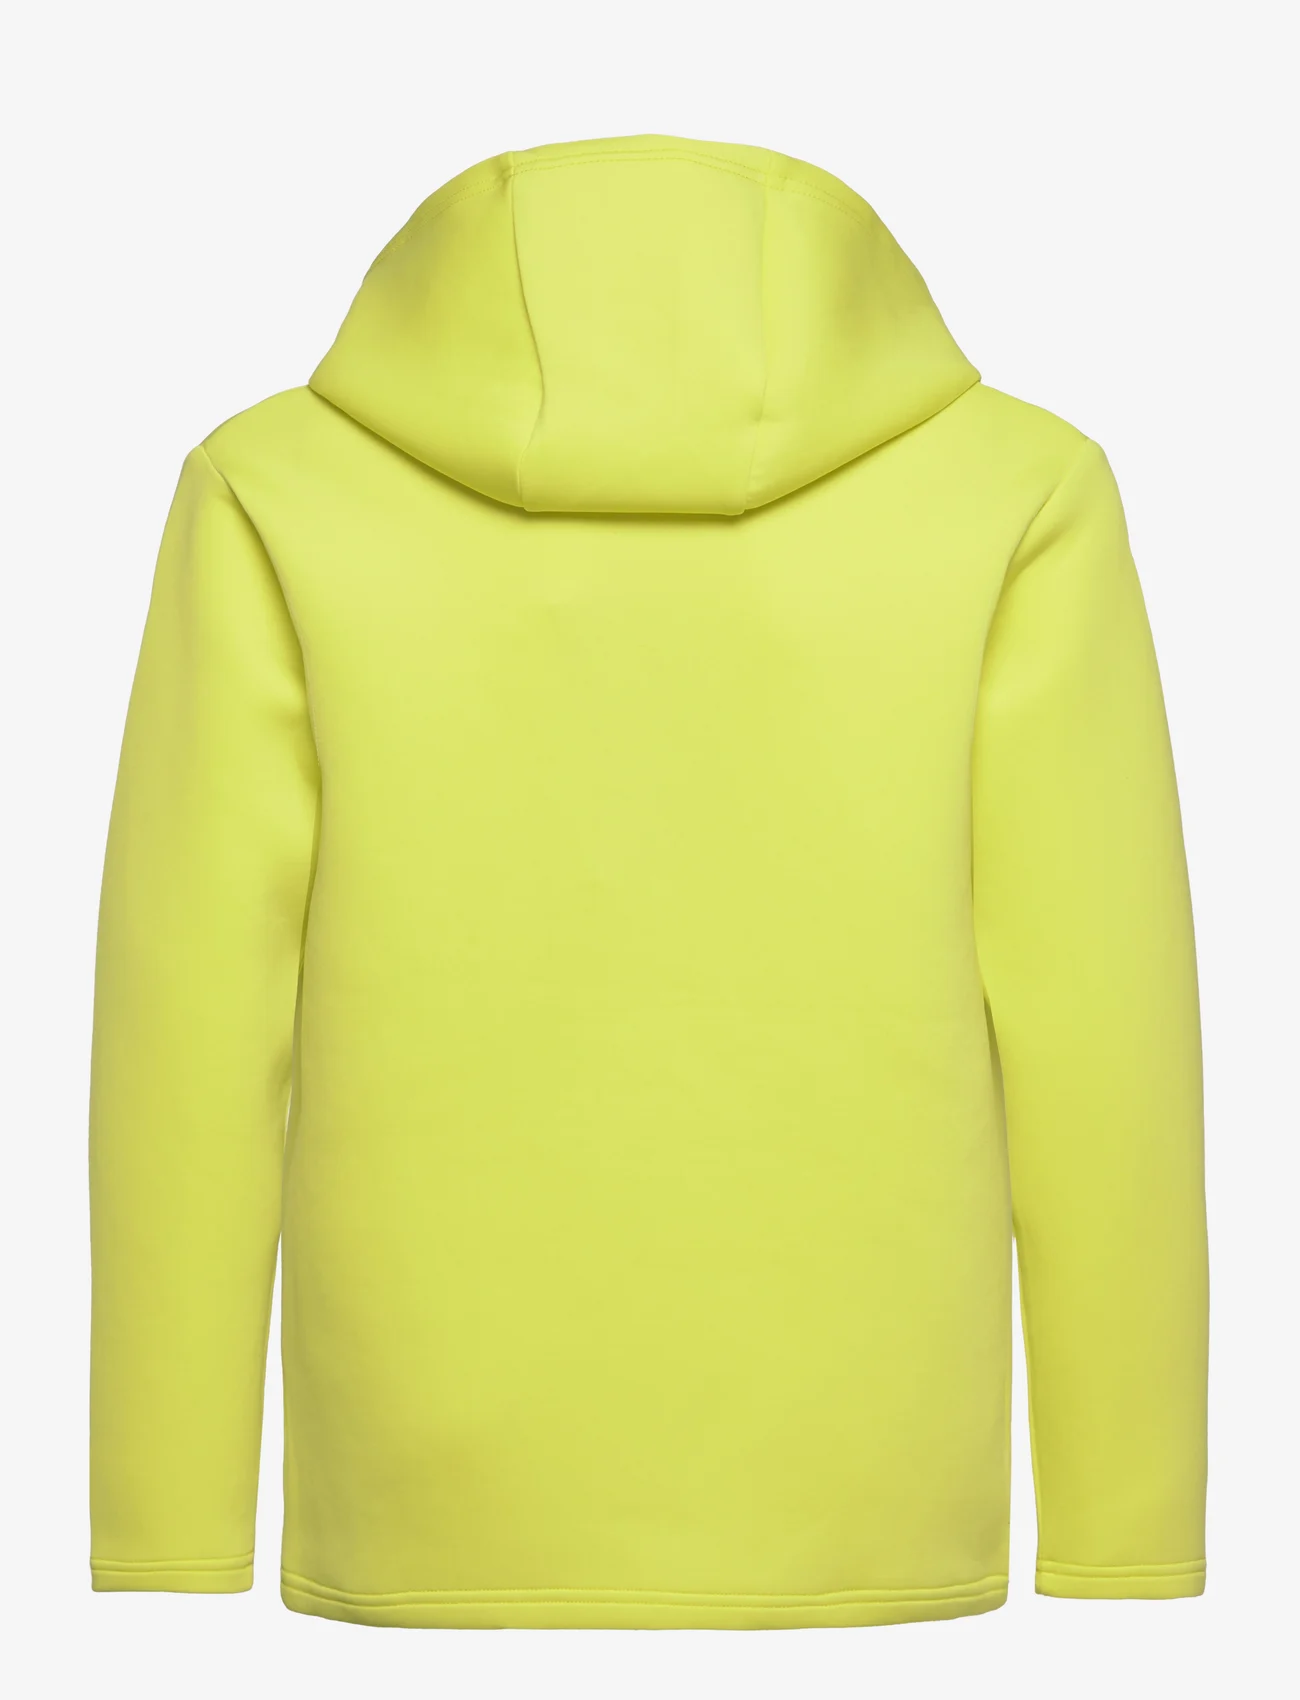 Reima - Sweater, Toimekas - sweatshirts & hoodies - yellow green - 1